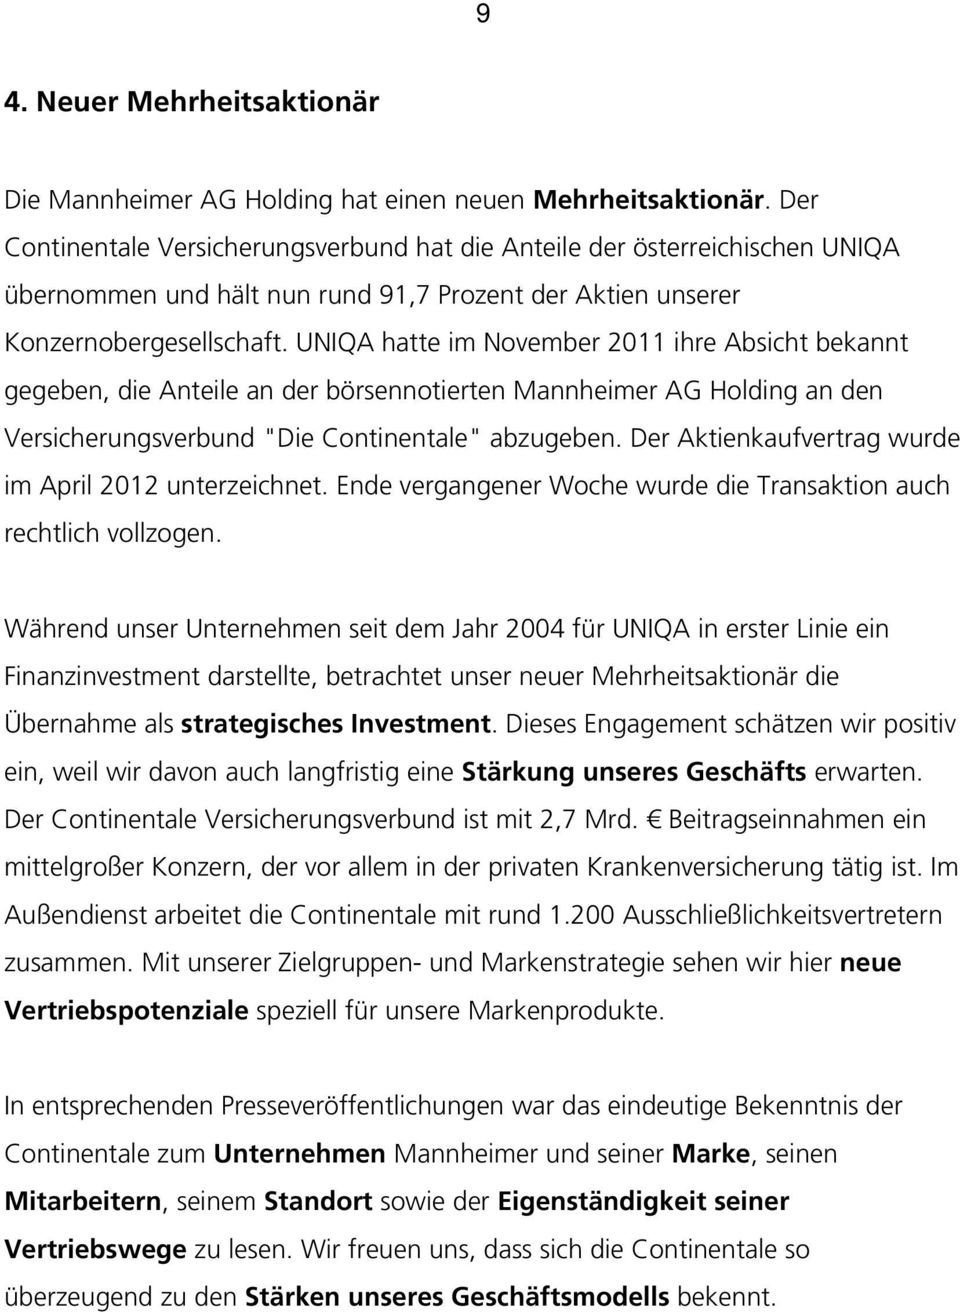 UNIQA hatte im November 2011 ihre Absicht bekannt gegeben, die Anteile an der börsennotierten Mannheimer AG Holding an den Versicherungsverbund "Die Continentale" abzugeben.